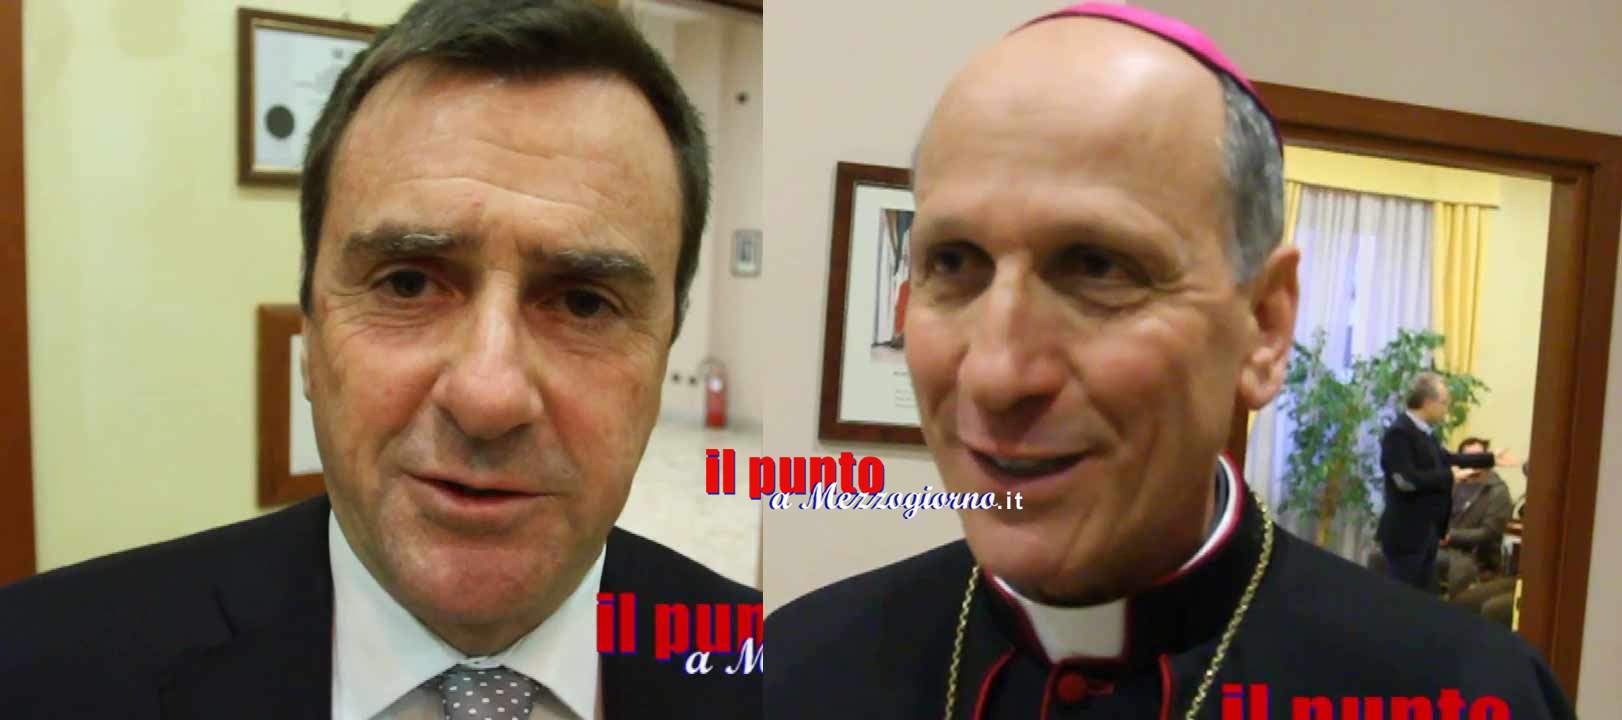 Il messaggio di fine anno del vescovo Antonazzo e del sindaco Petrarcone